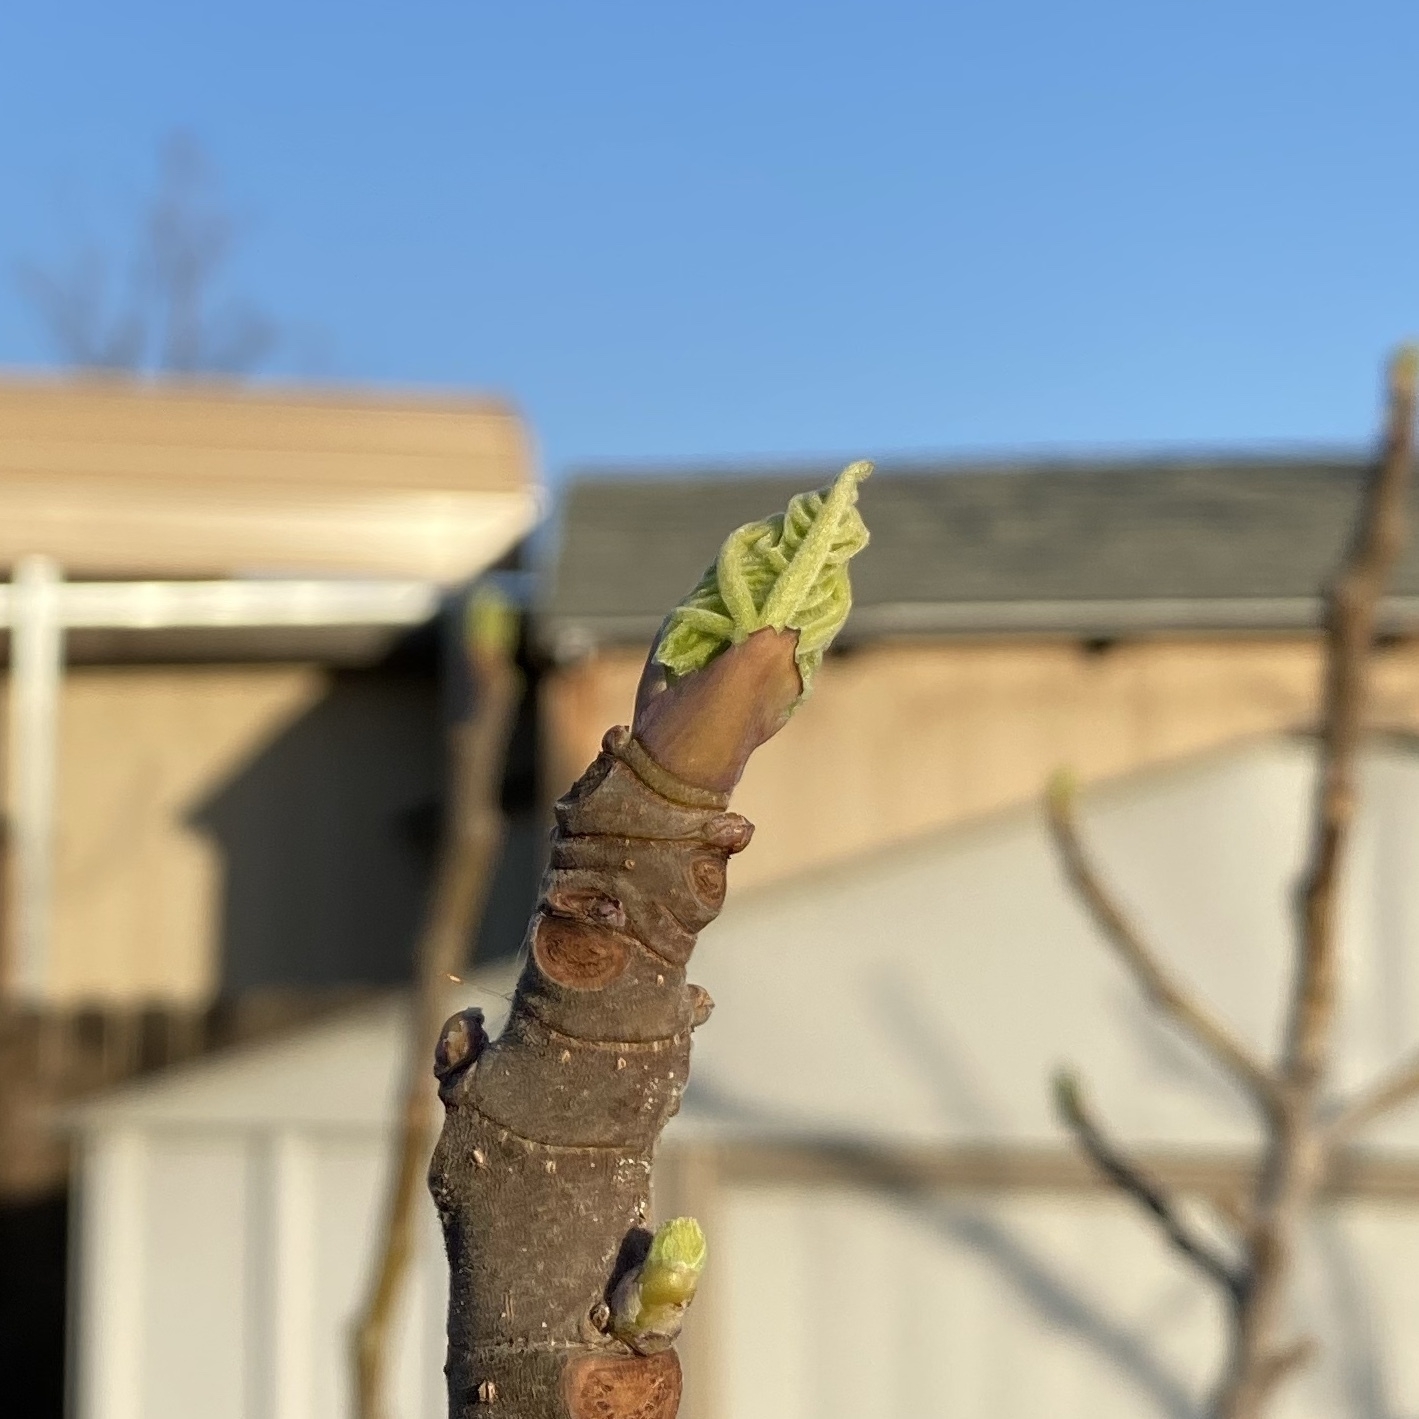 fig showing leaf growth